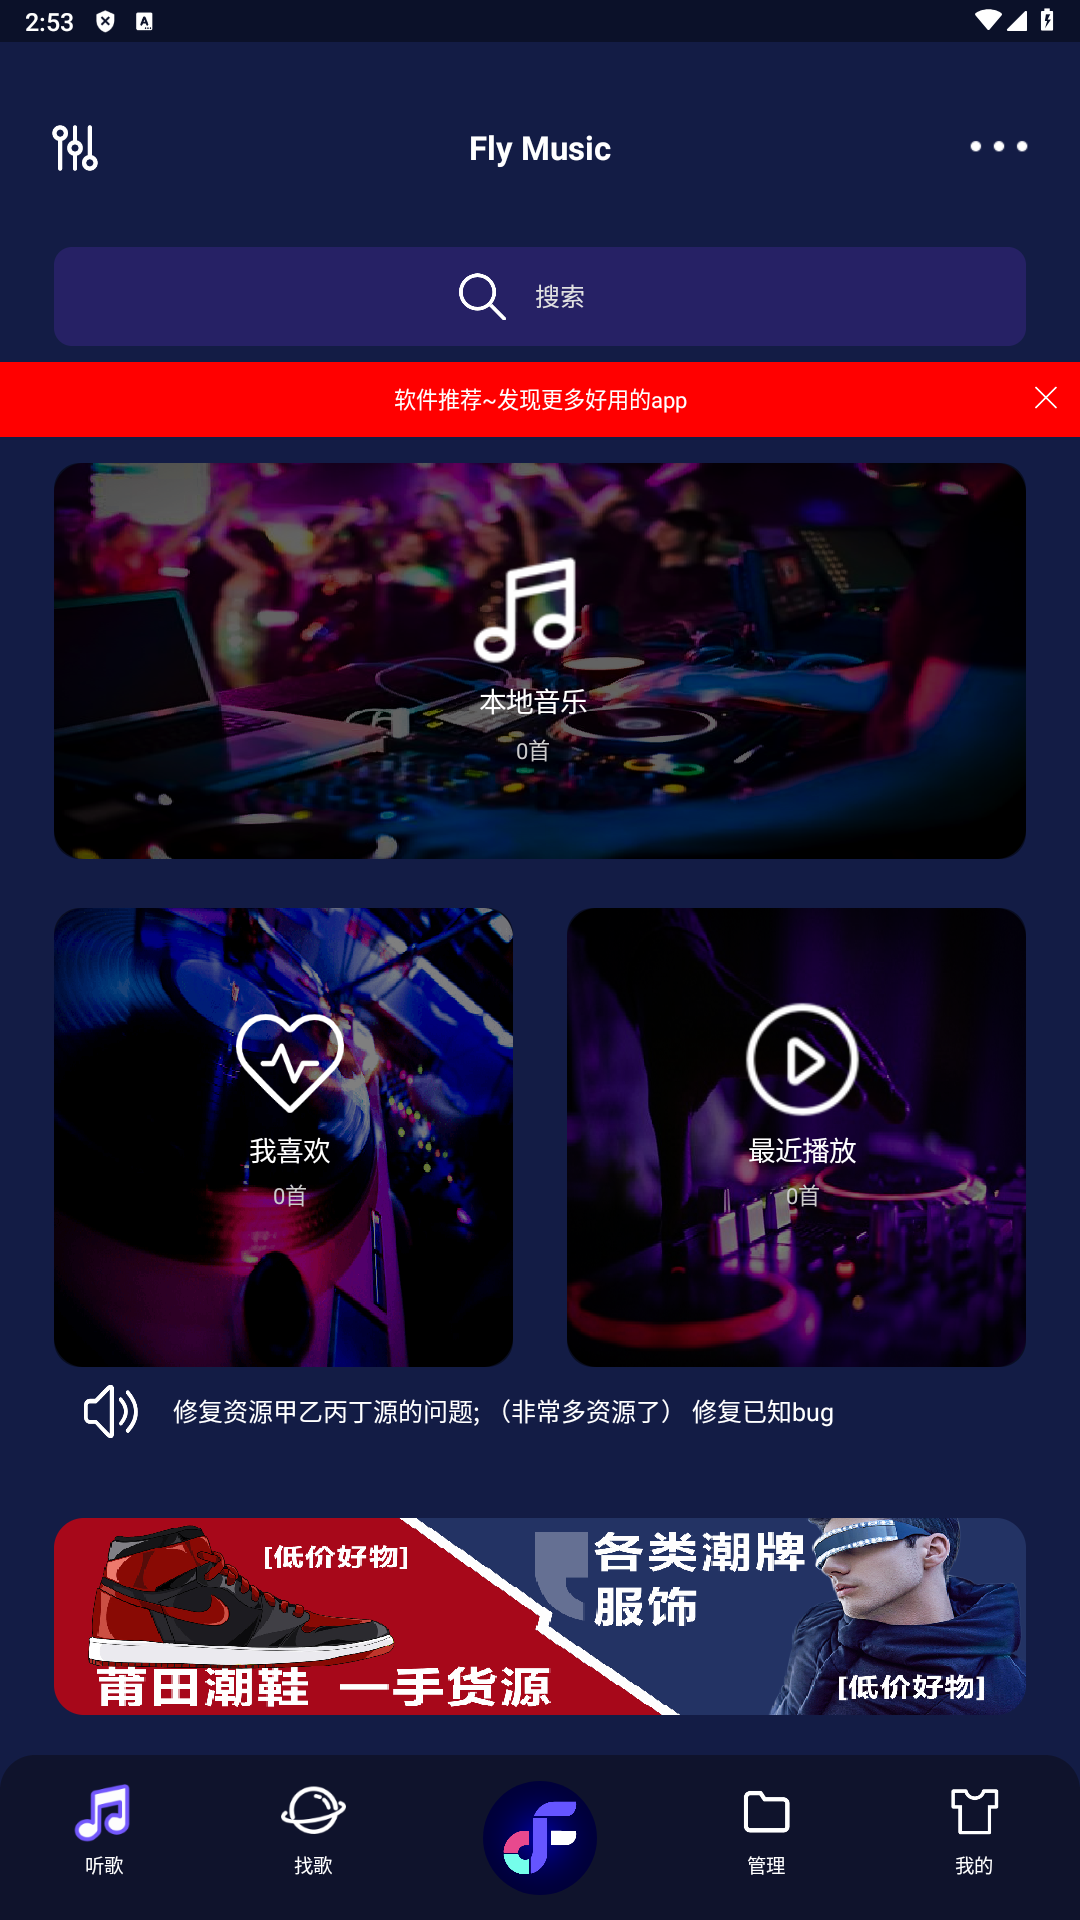 飞翔音乐(fly music)app官方版v1.1.1截图2